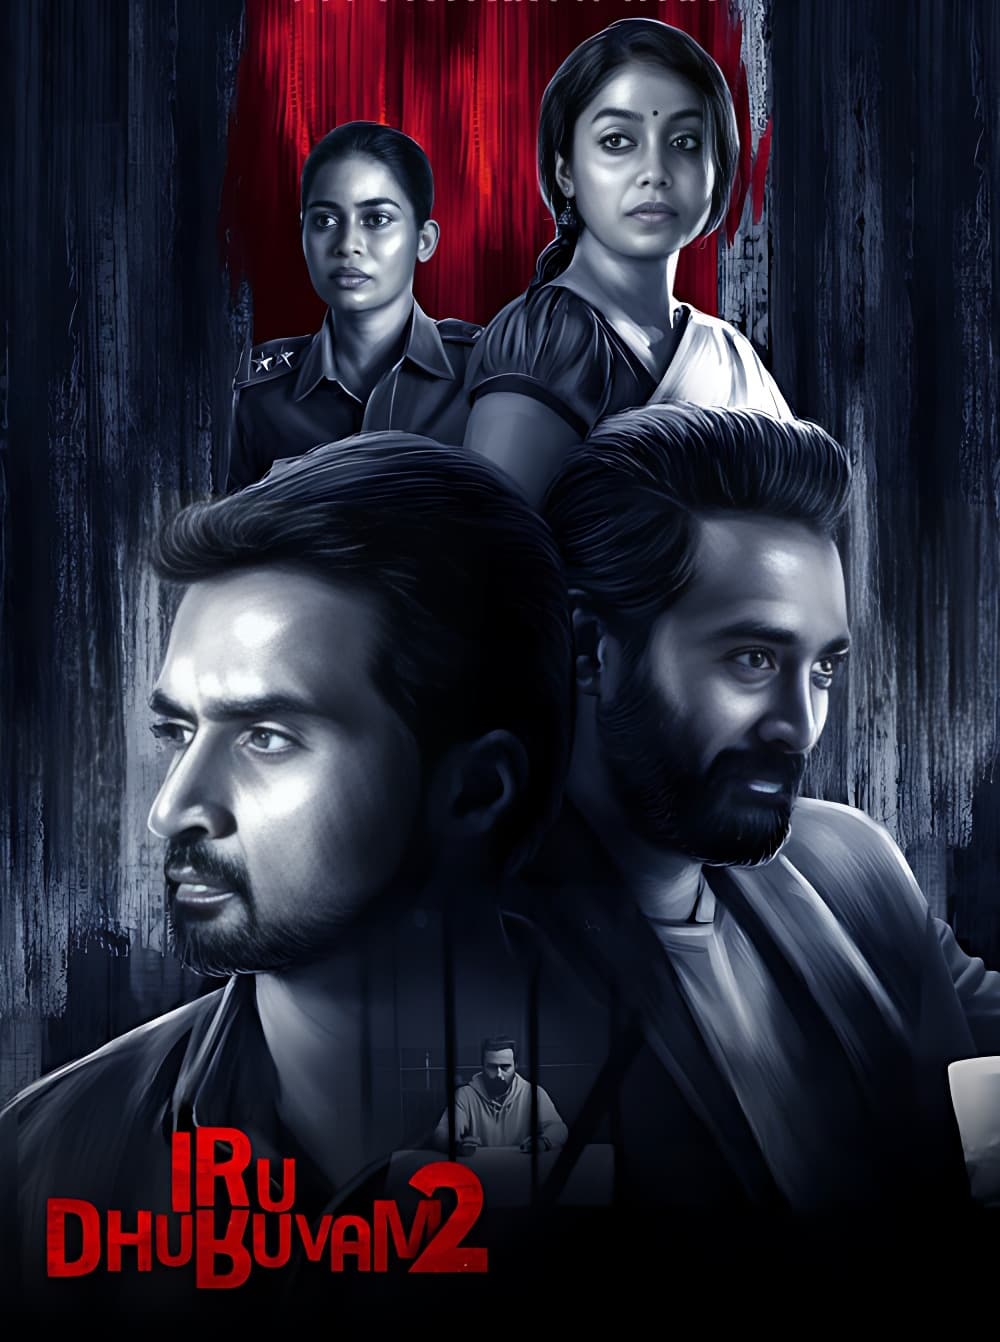 Iru Dhuruvam (2019) poster - Allmovieland.com